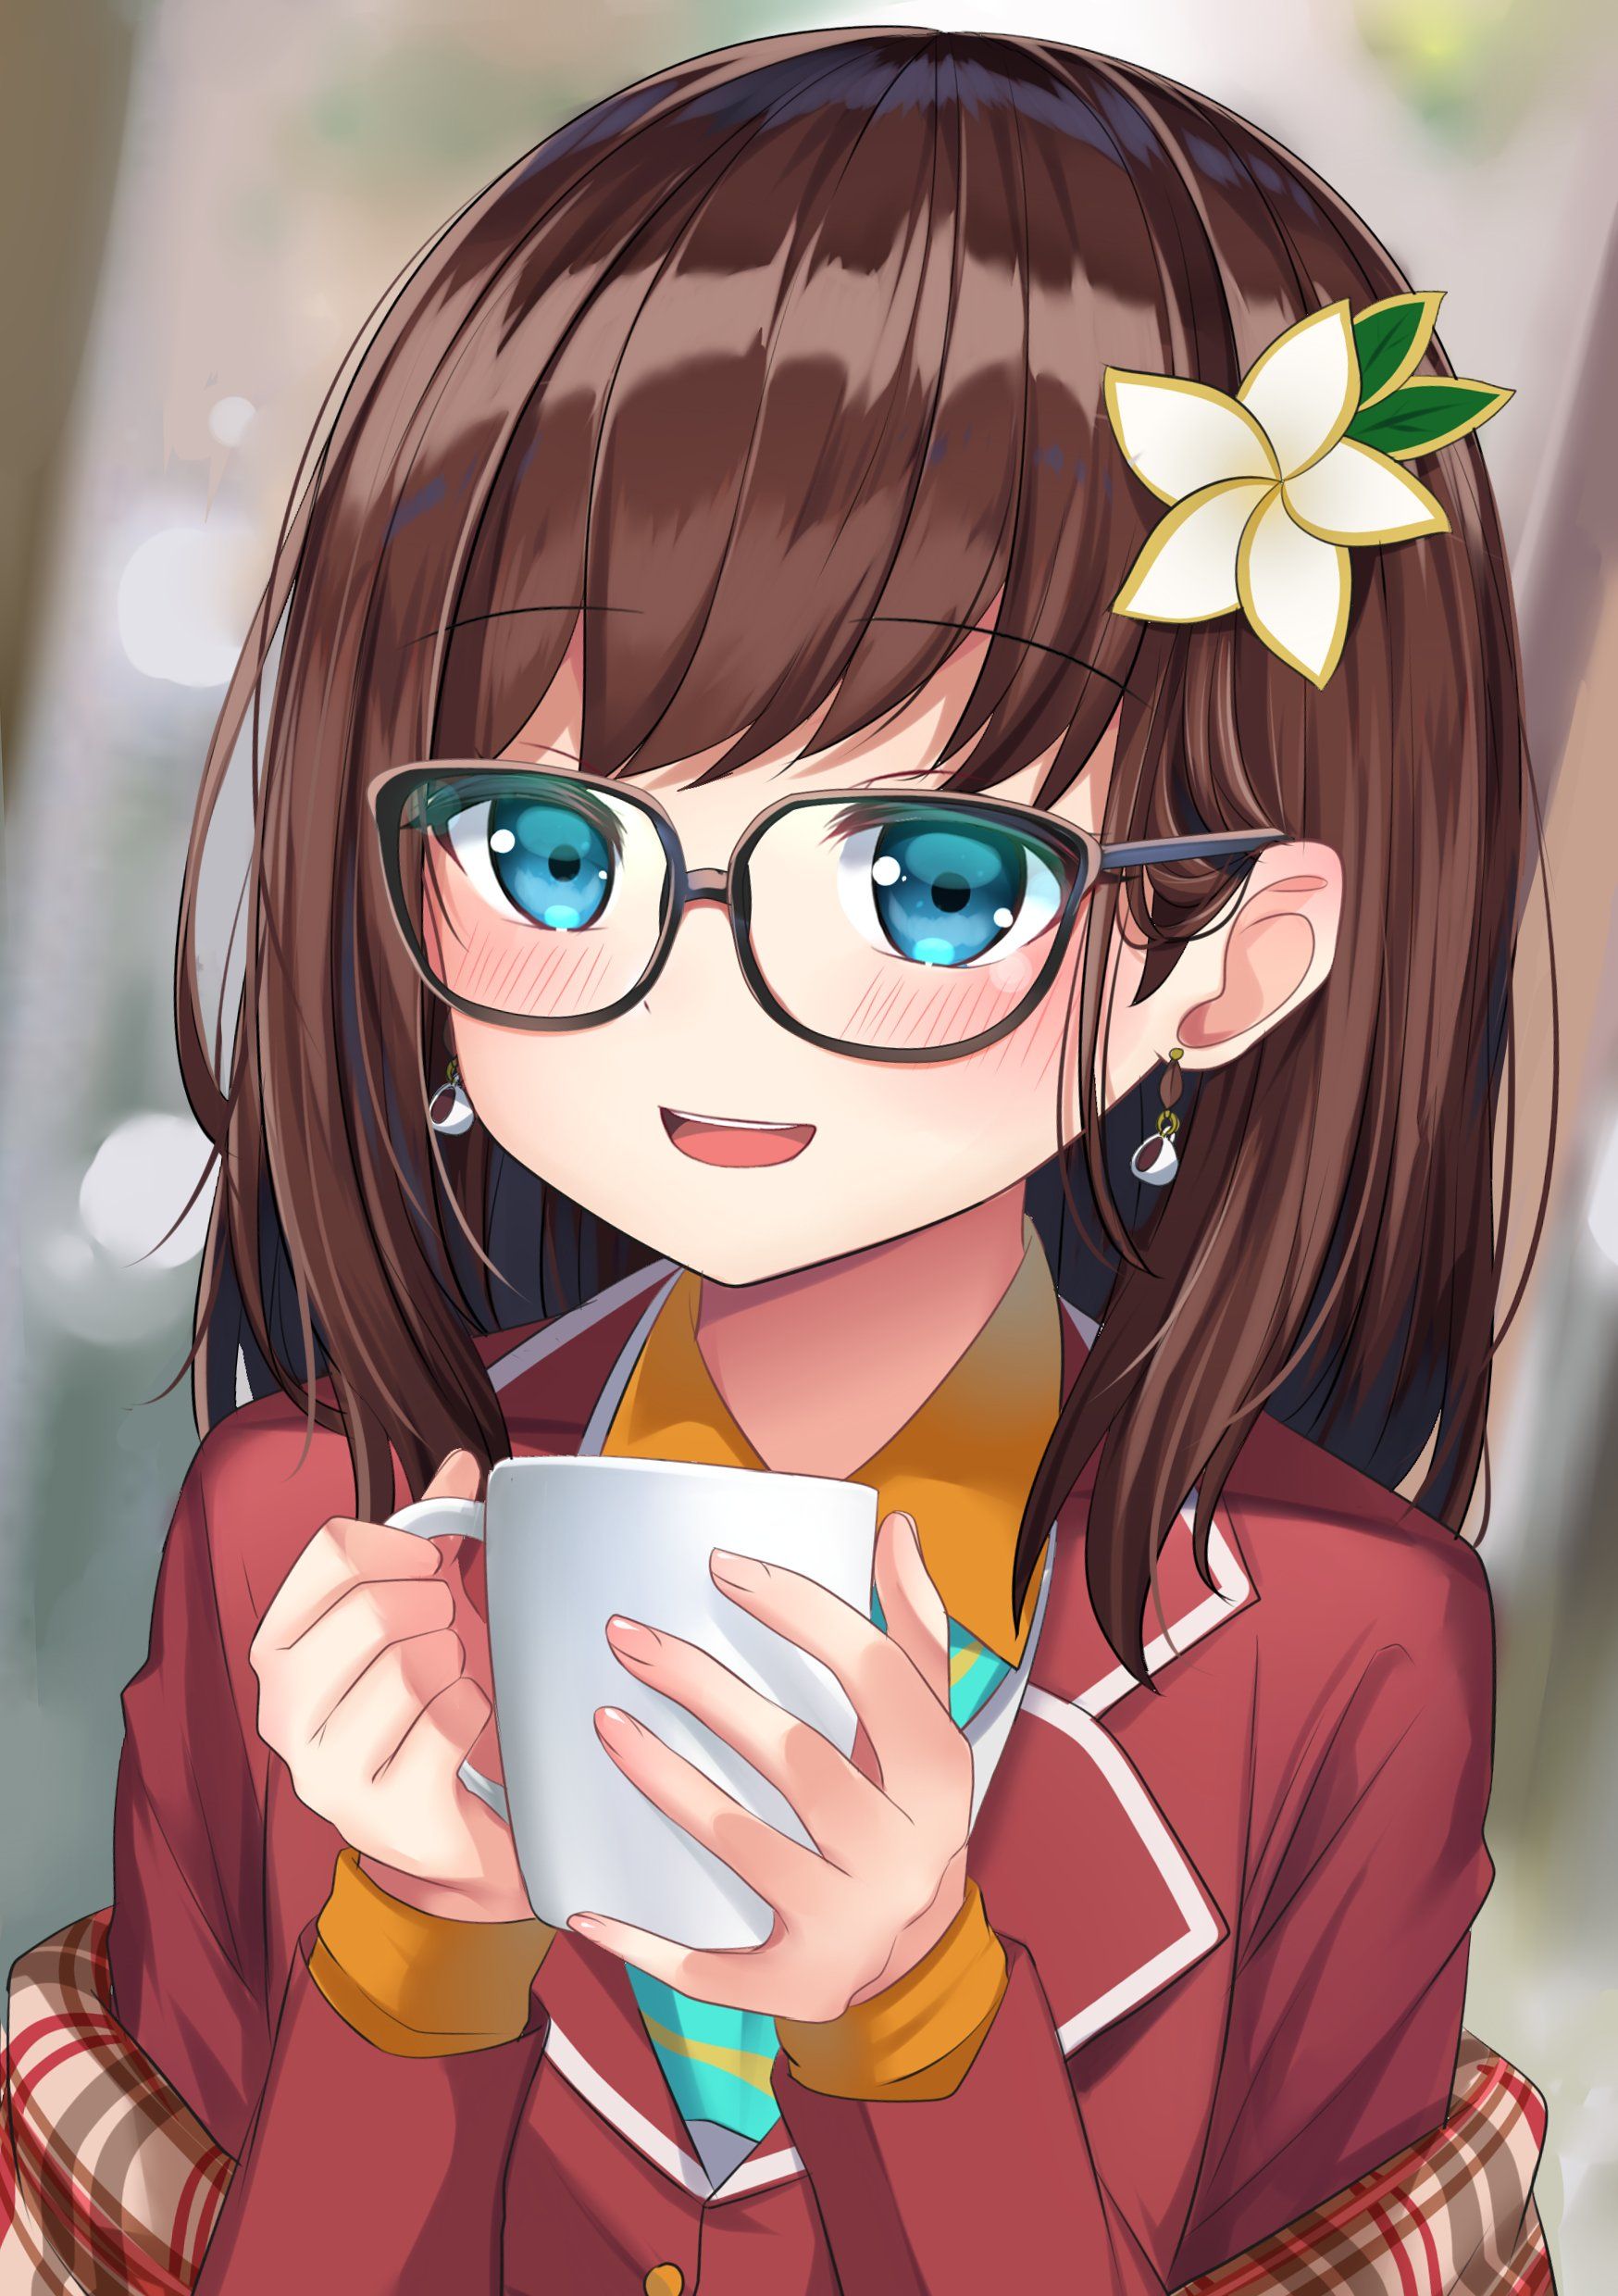 Cô gái Anime đeo kính luôn làm sống động và tăng thêm sức hút của bức ảnh. Đến với tấm hình này, bạn sẽ được chiêm ngưỡng vẻ đẹp hoàn hảo của một nhân vật Anime nữ với chiếc kính mắt cực kỳ xịn sò.